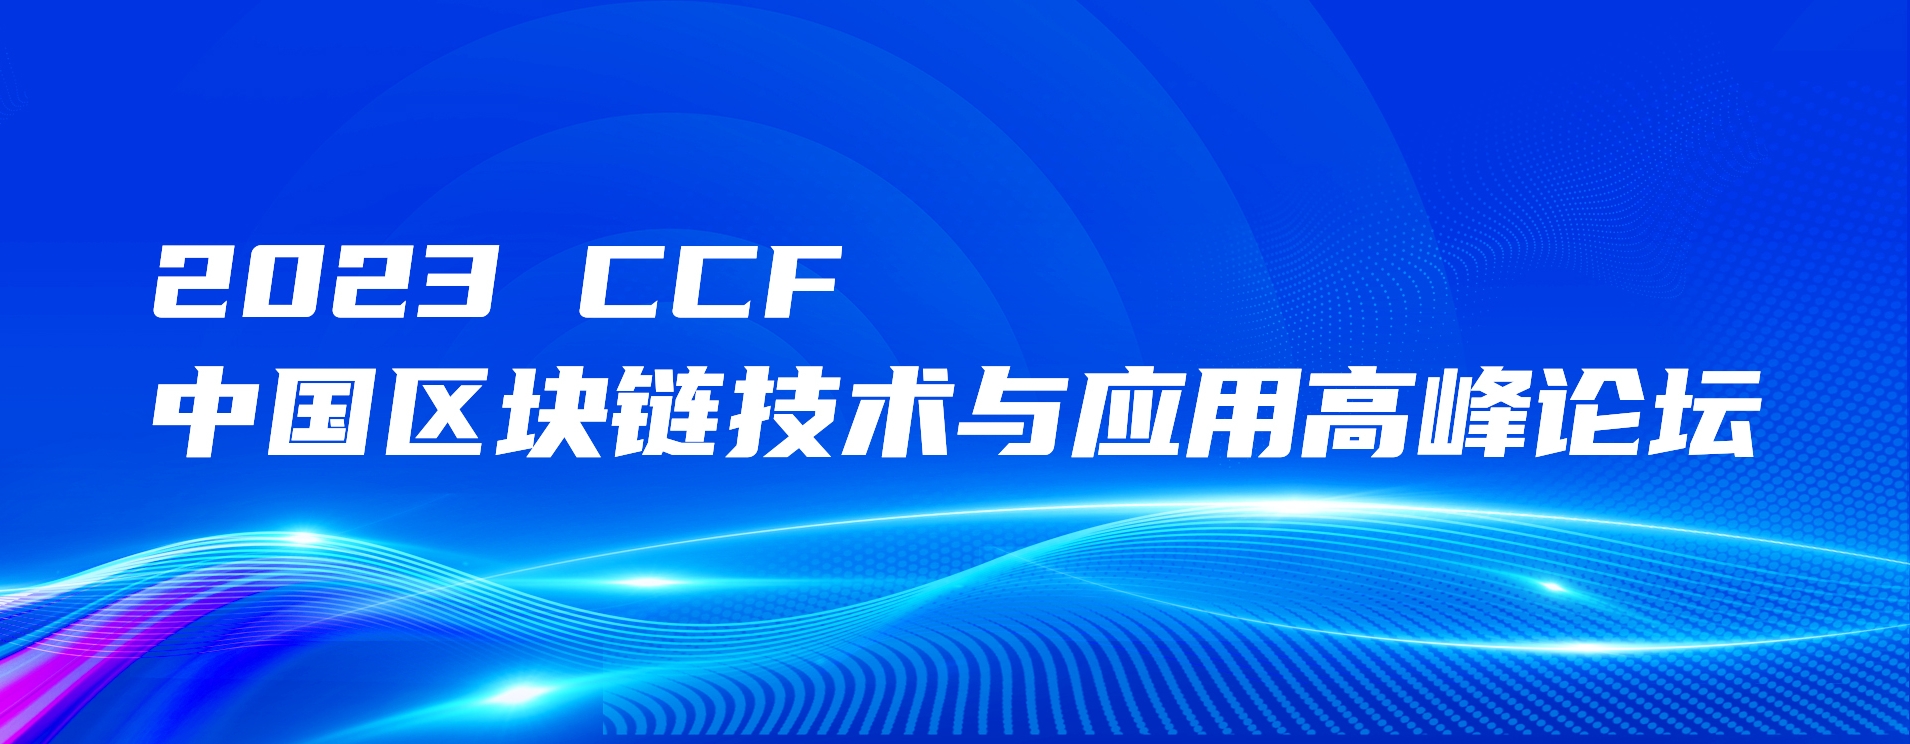 活动预告 | 2023CCF中国区块链技术与应用高峰论坛议程发布